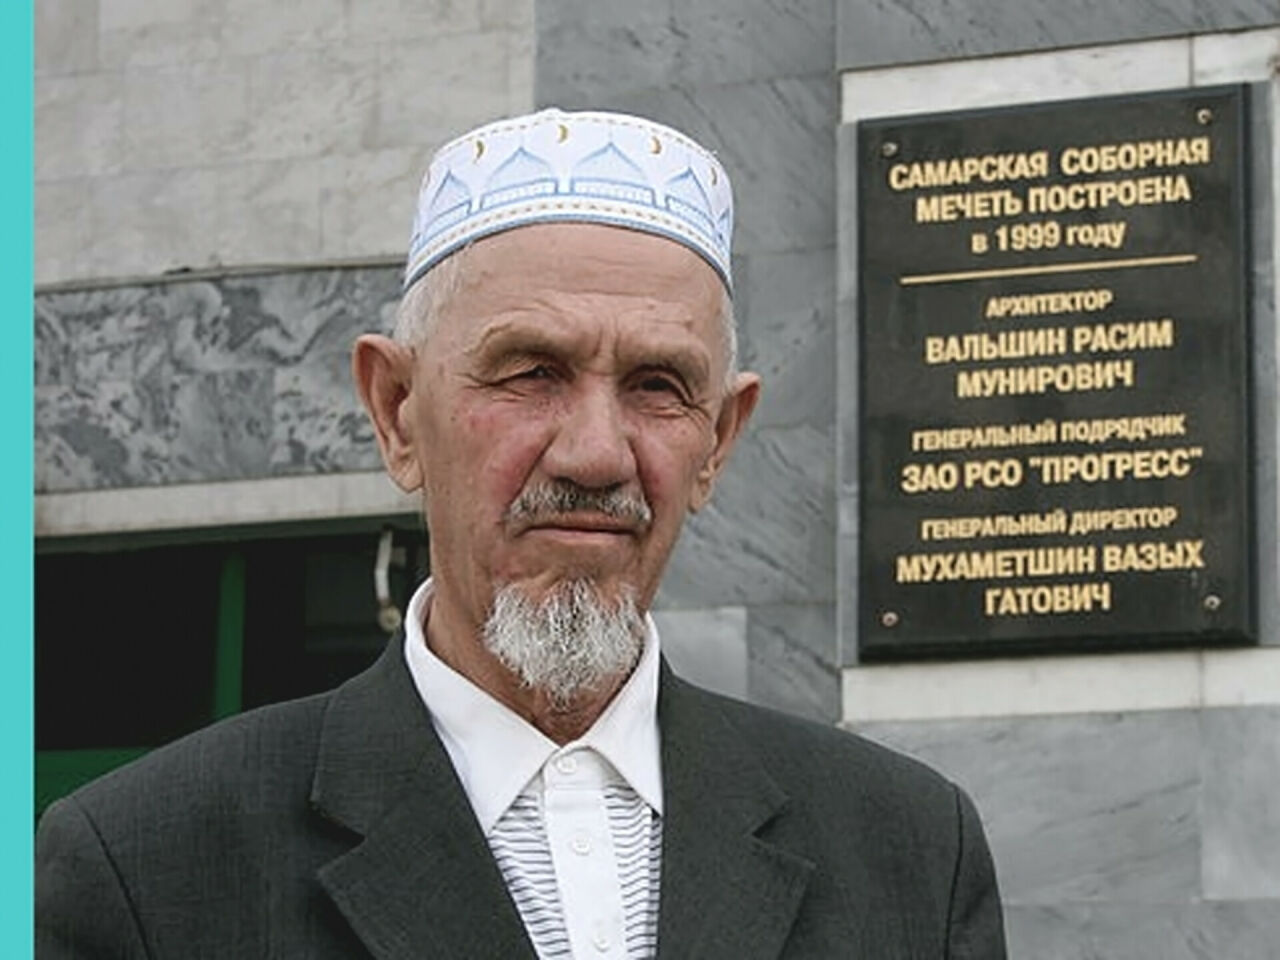 «Бердәмлек» газетасы: Мурат Сафин - туган ягыбызның татар тарихчысы